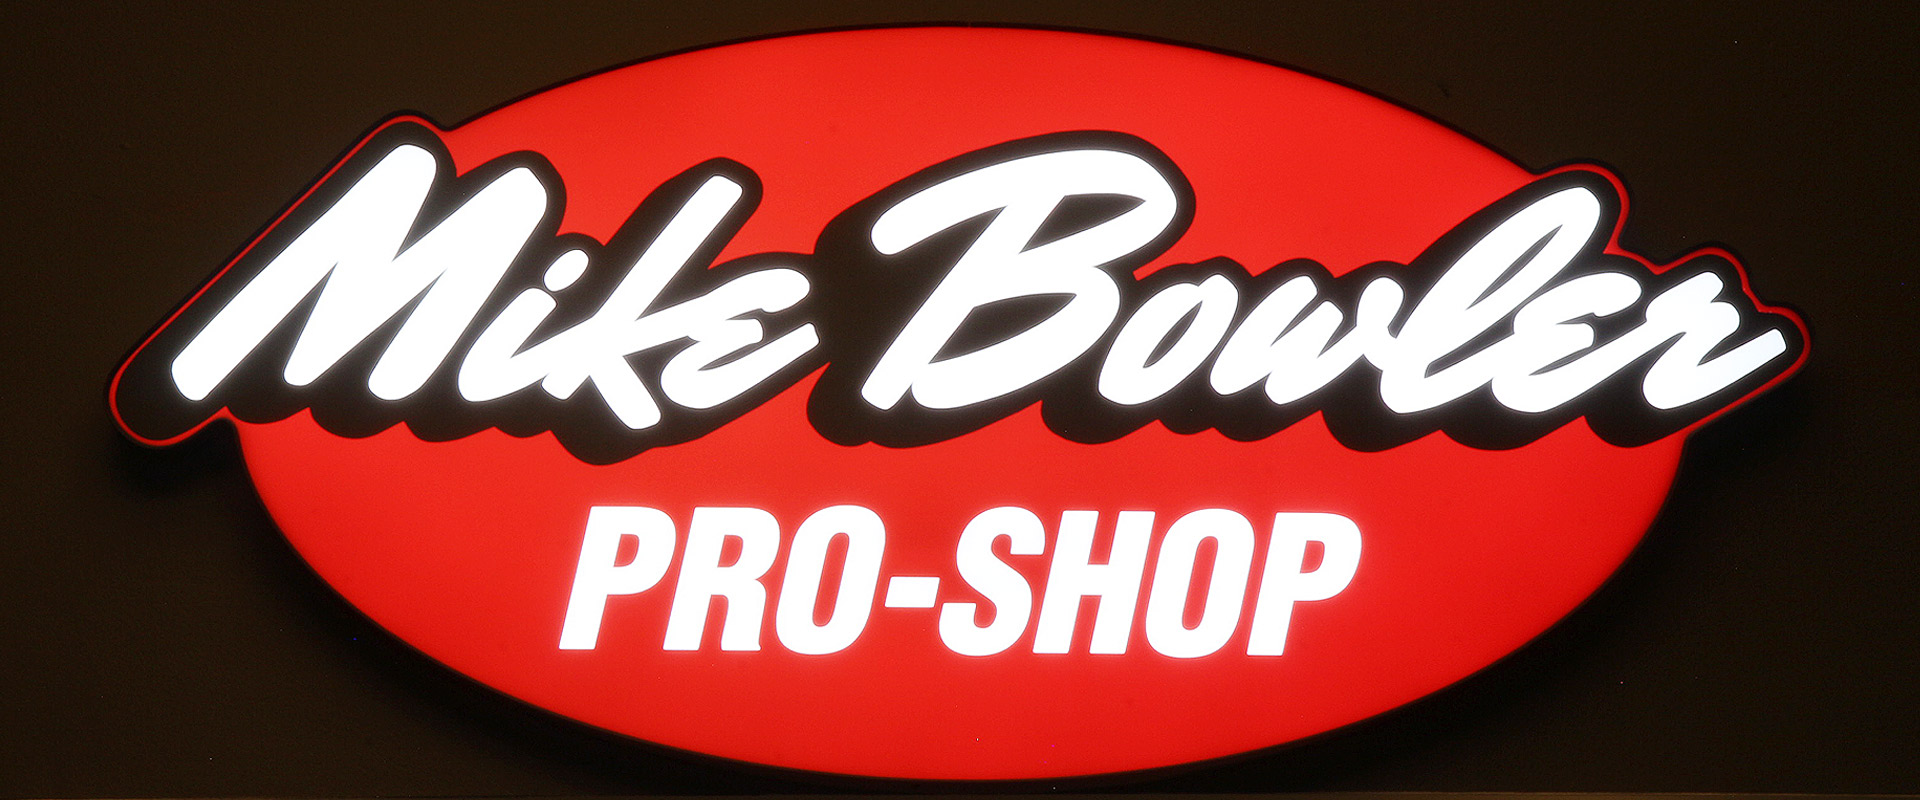 Mike Bowler Pro Shop